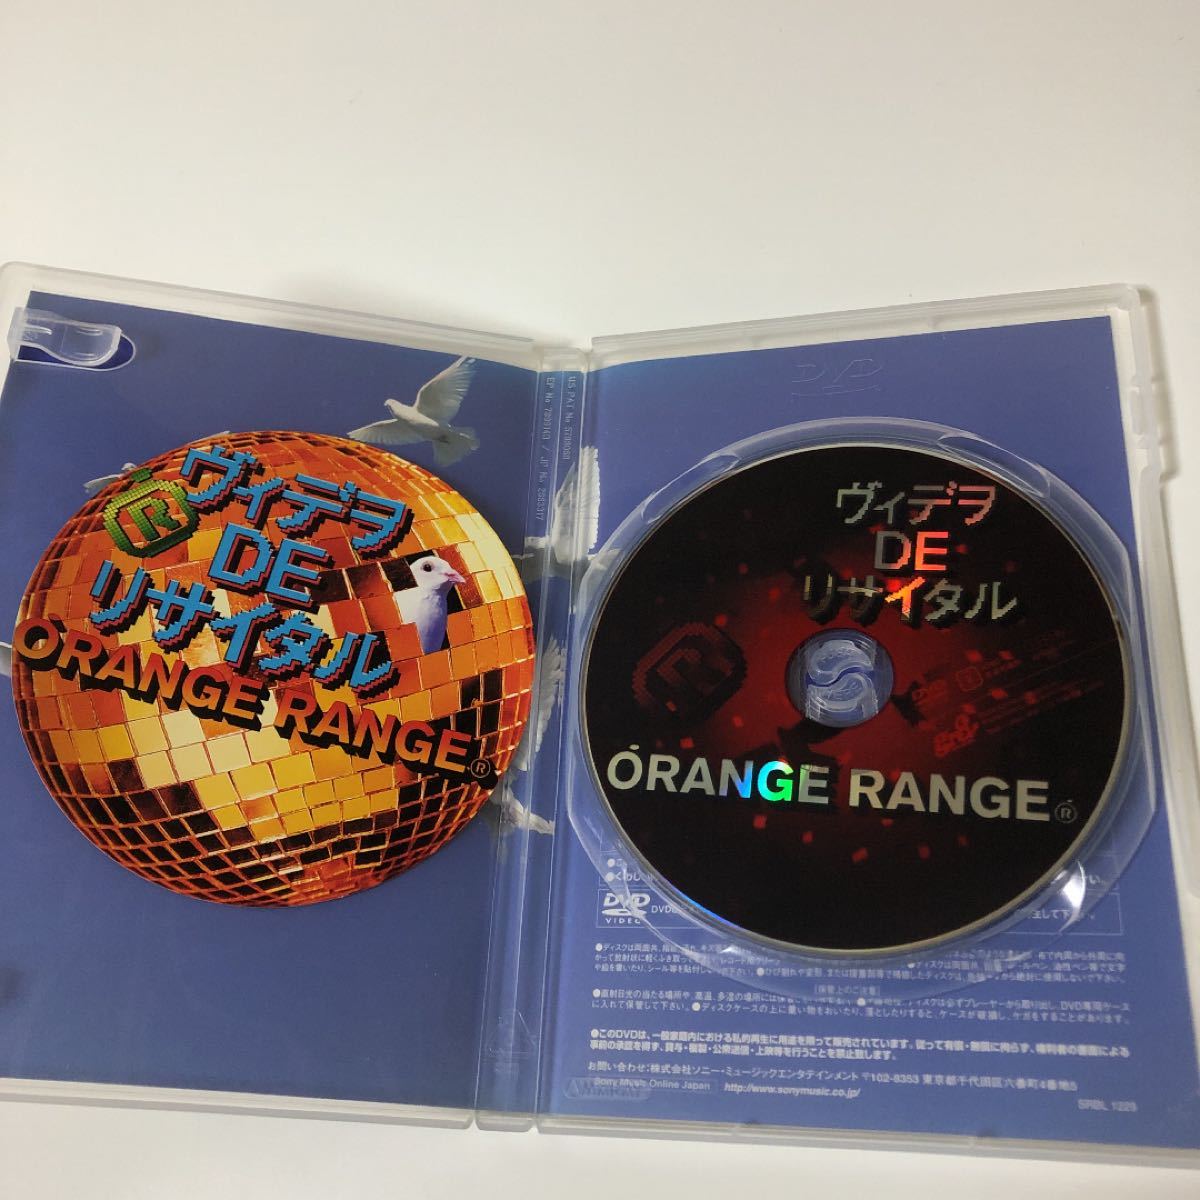 「ORANGE RANGE/ヴィデヲ・DE・リサイタル」オレンジレンジ